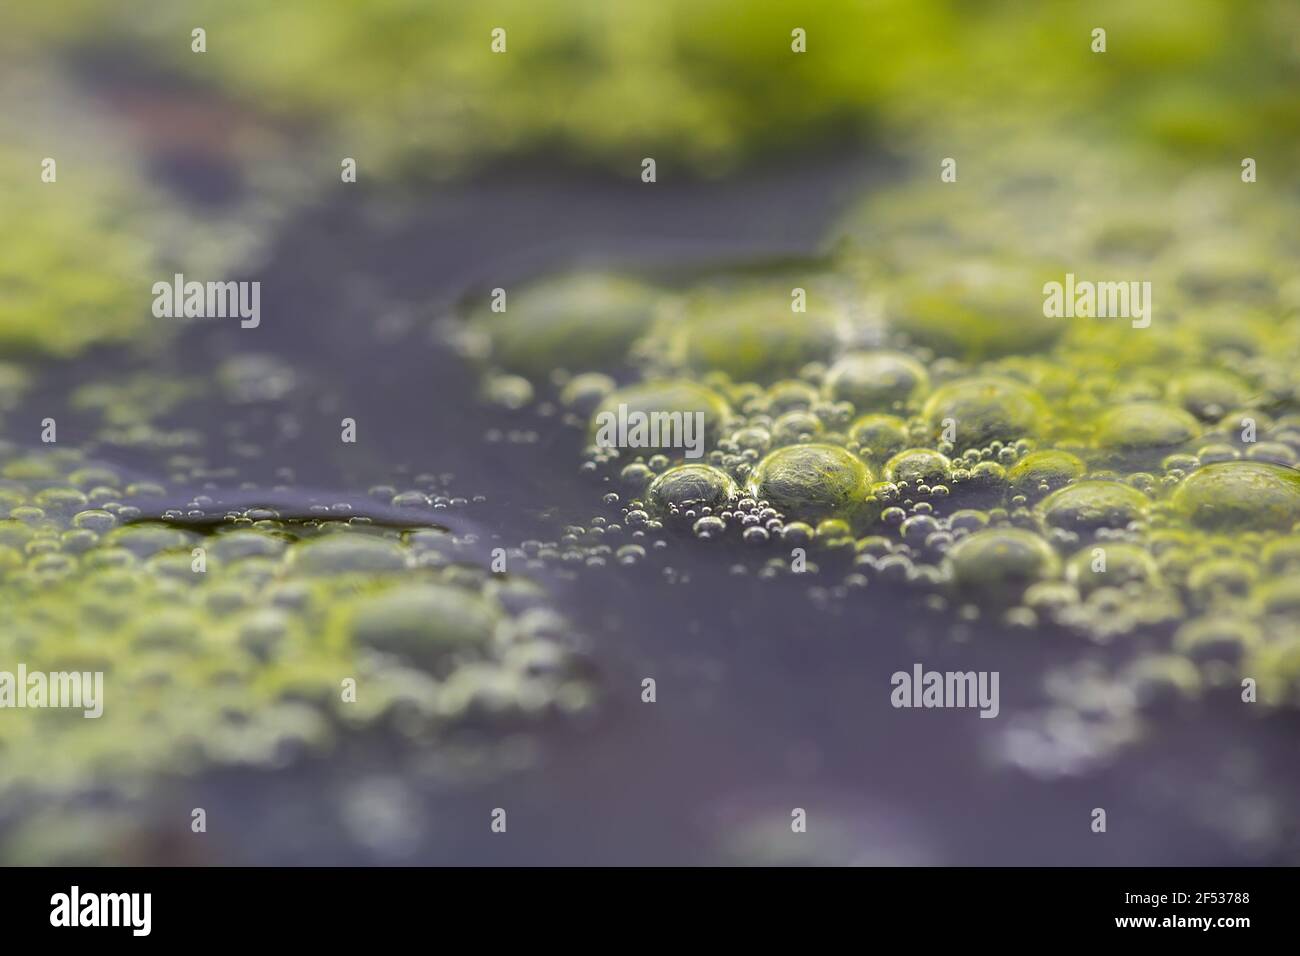 Gros plan d'algues dans l'eau avec des gouttelettes à partir du niveau de la surface. Science, biologie concept de fond Banque D'Images